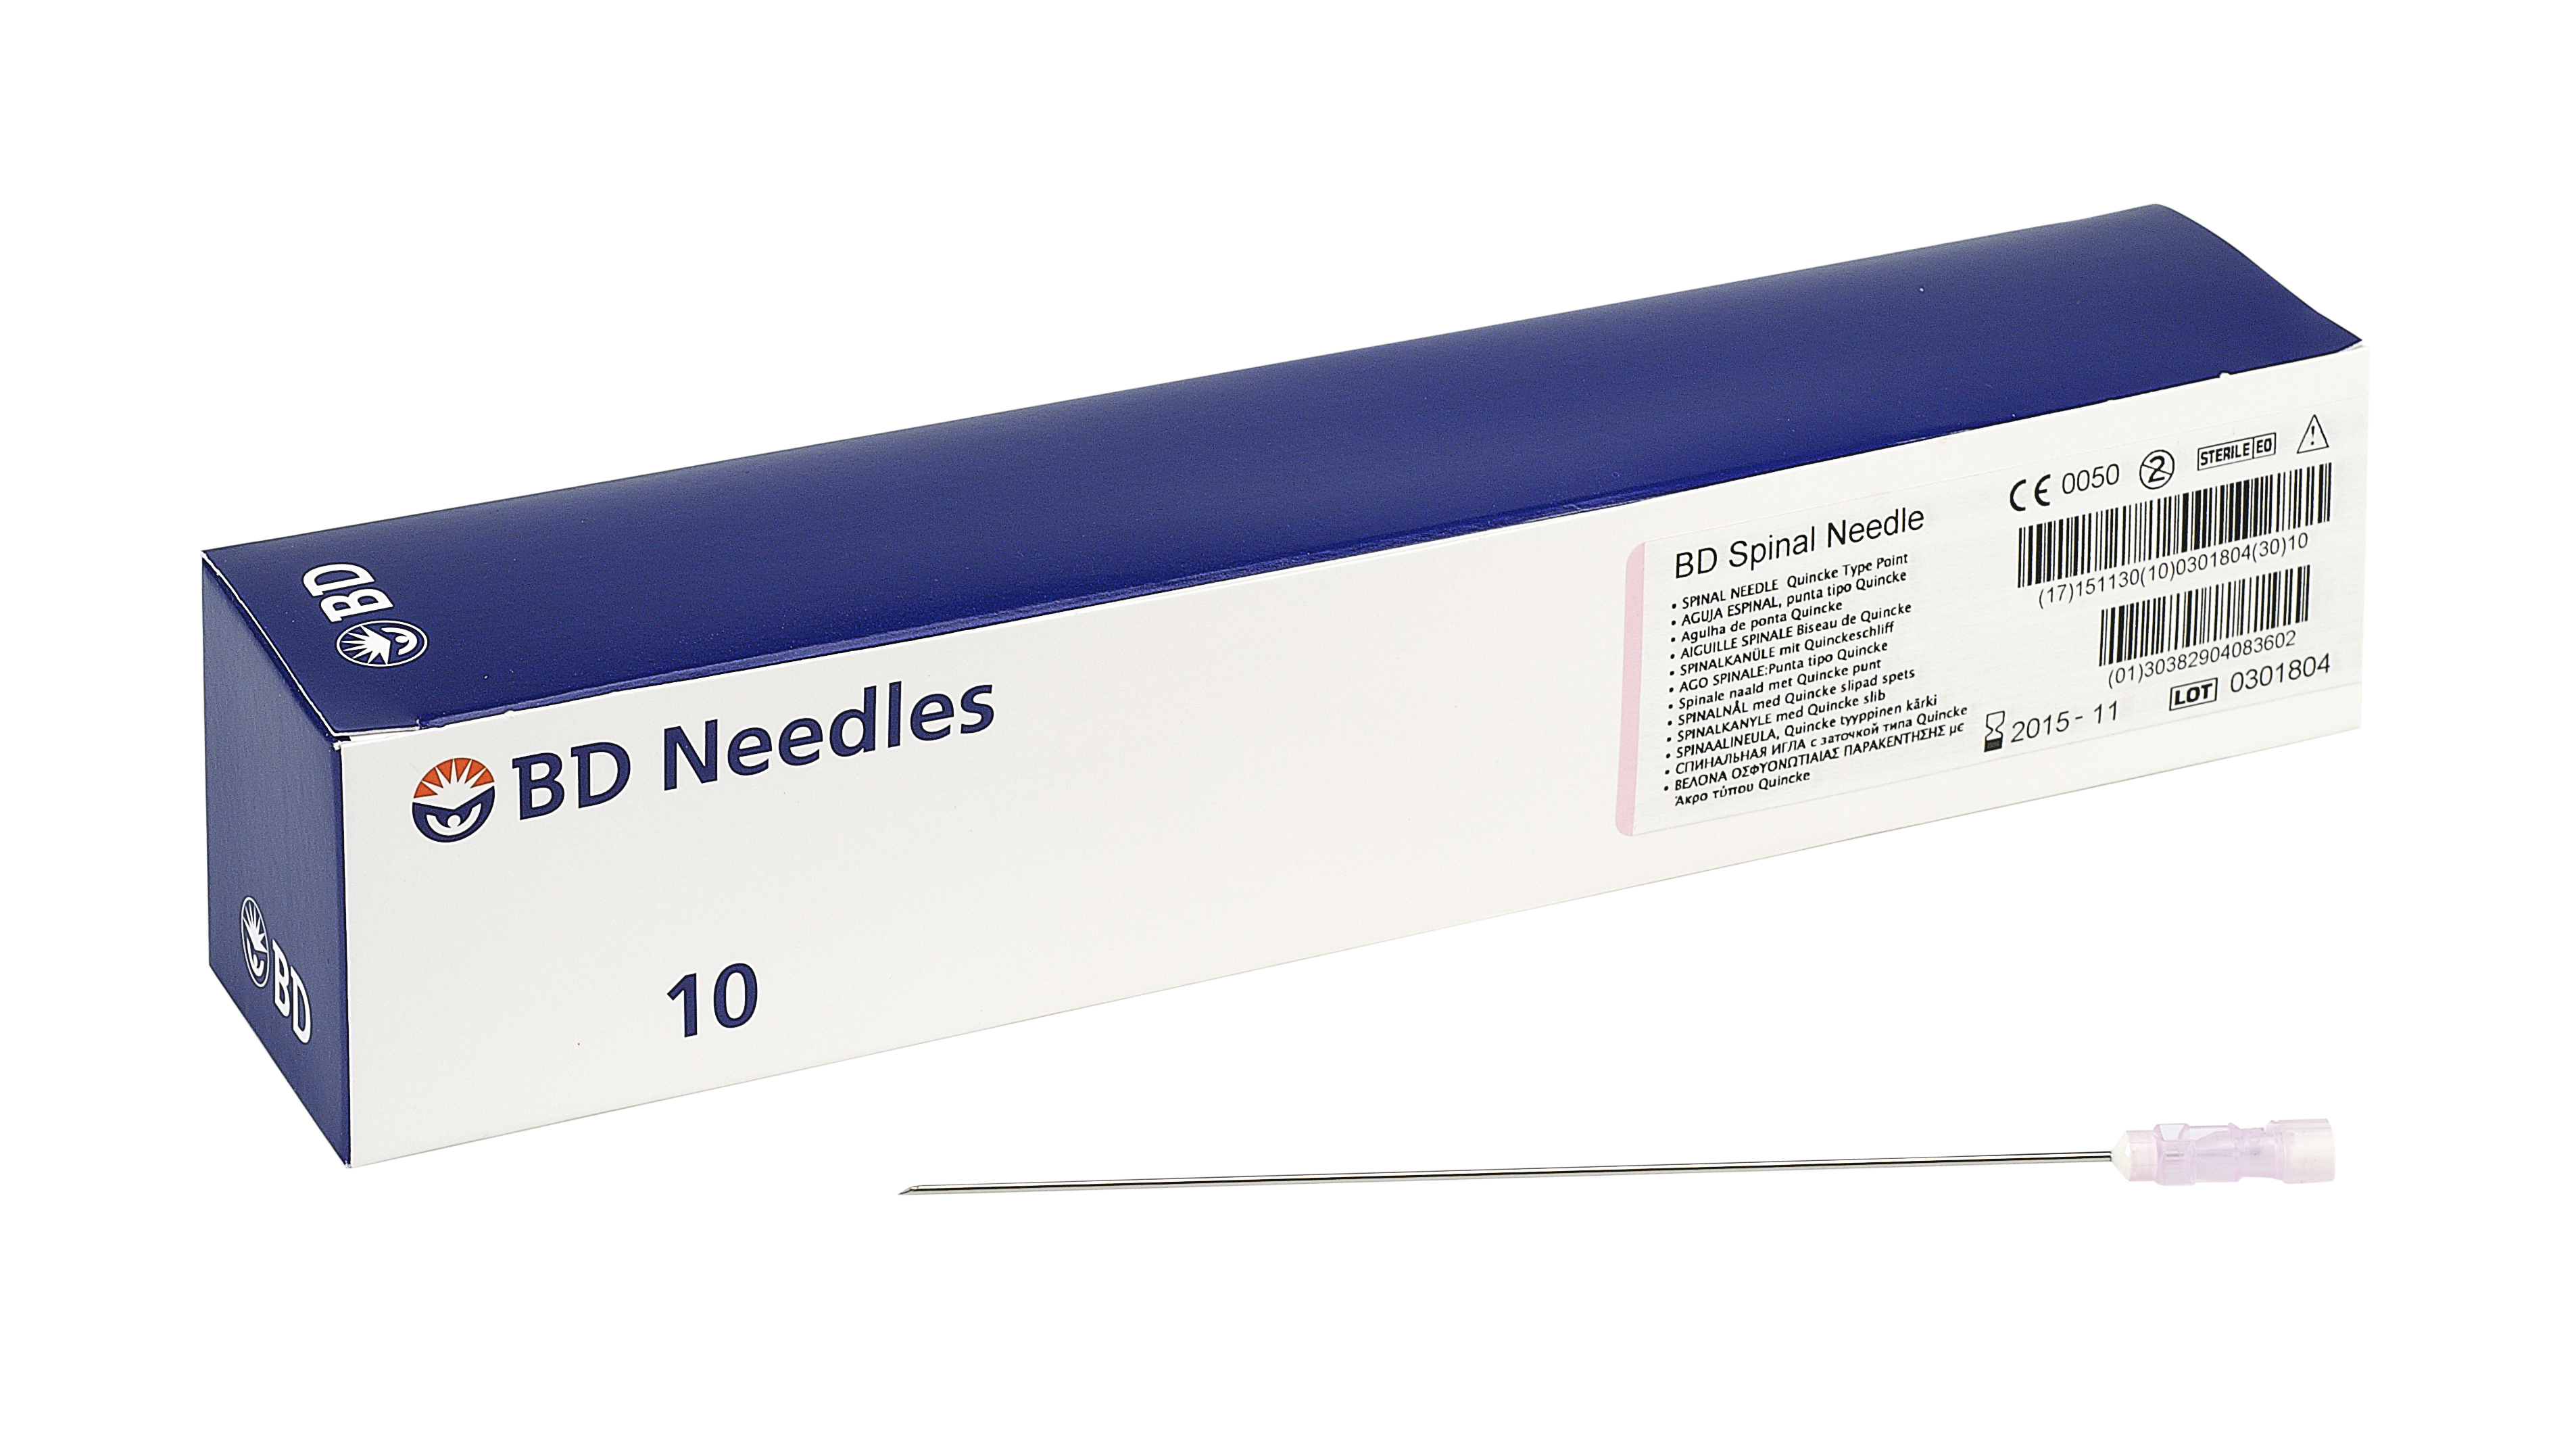 BD Needle Spinal 20Gx6, 10pcs